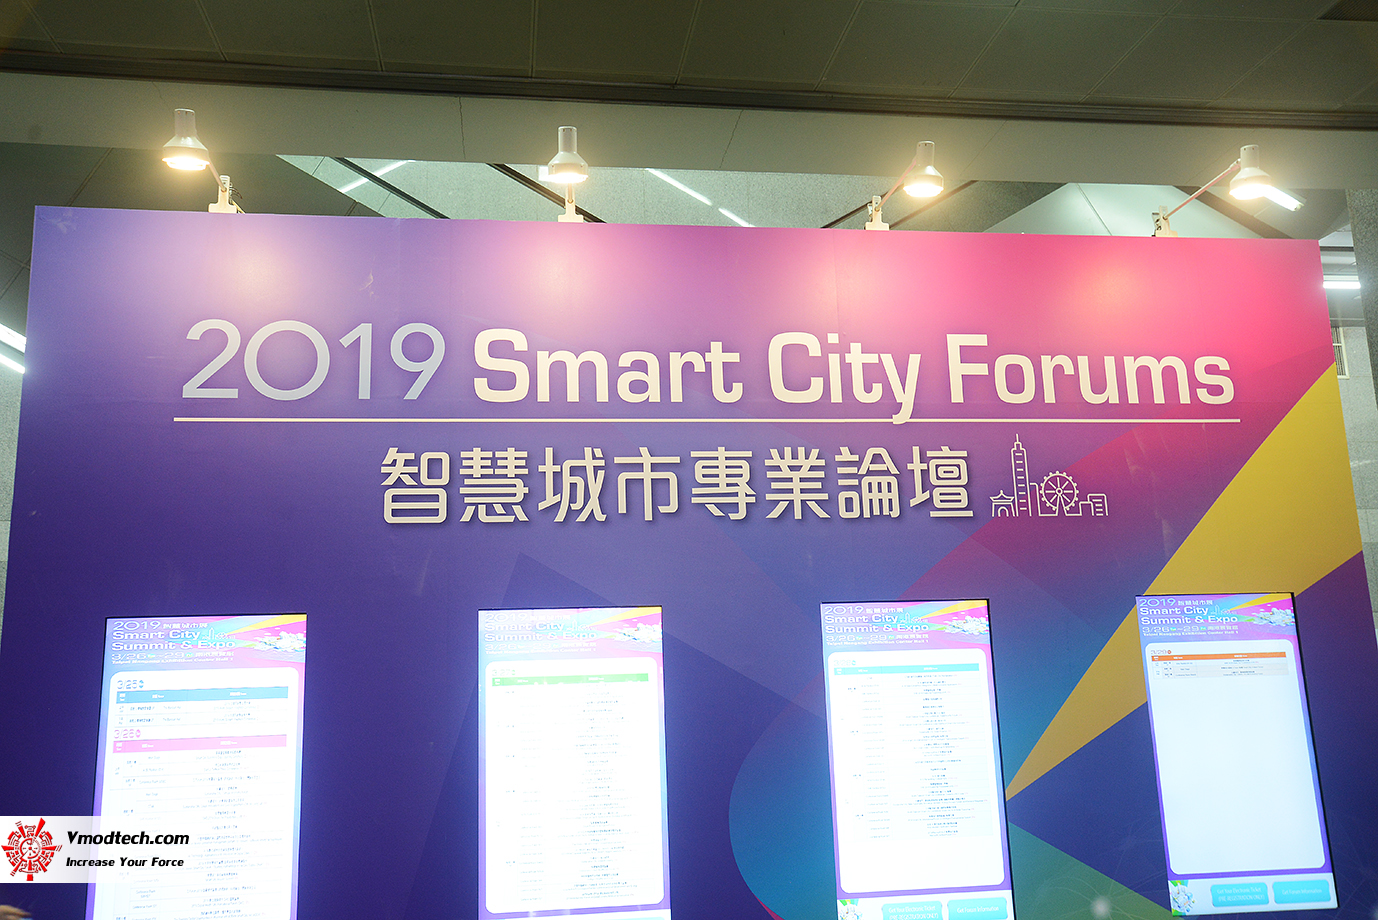 dsc 8713 เยี่ยมชมพิธีเปิด 2019 SMART CITY SUMMIT & EXPO ณ กรุงไทเป ประเทศไต้หวัน 